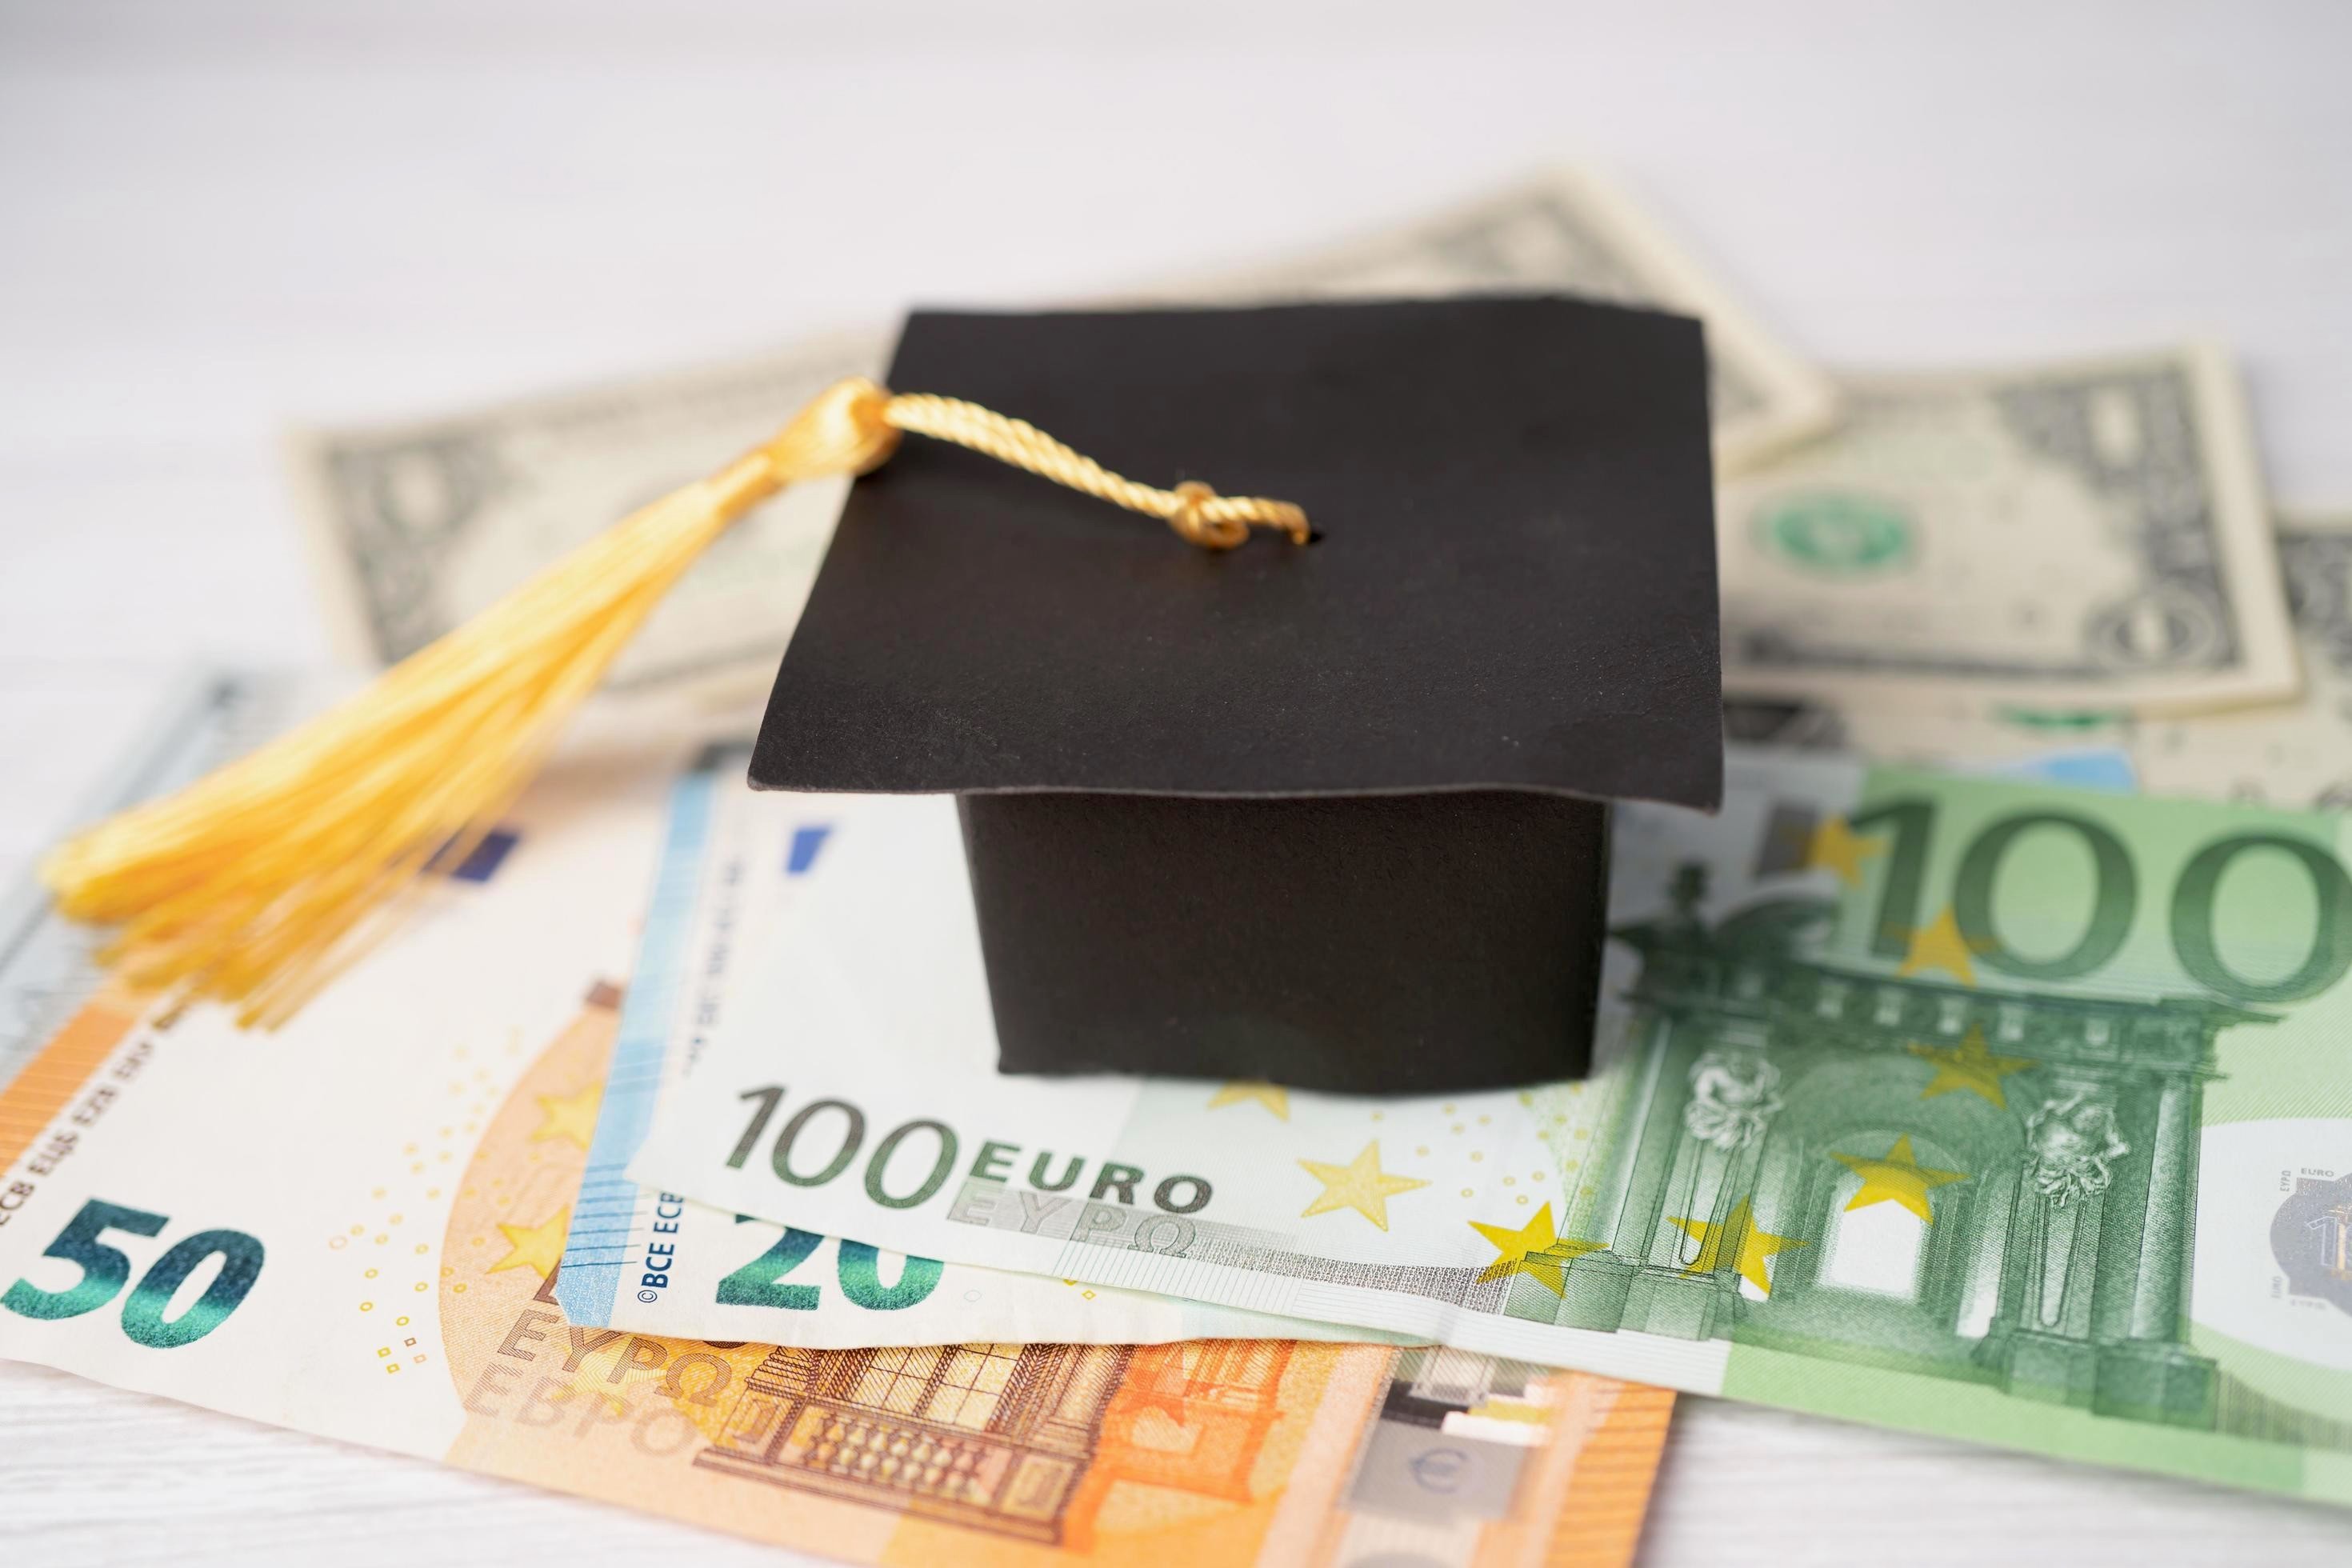  Φοιτητικό Επίδομα: Ανοίγει εκ νέου η πλατφόρμα για τα 2000 ευρώ!